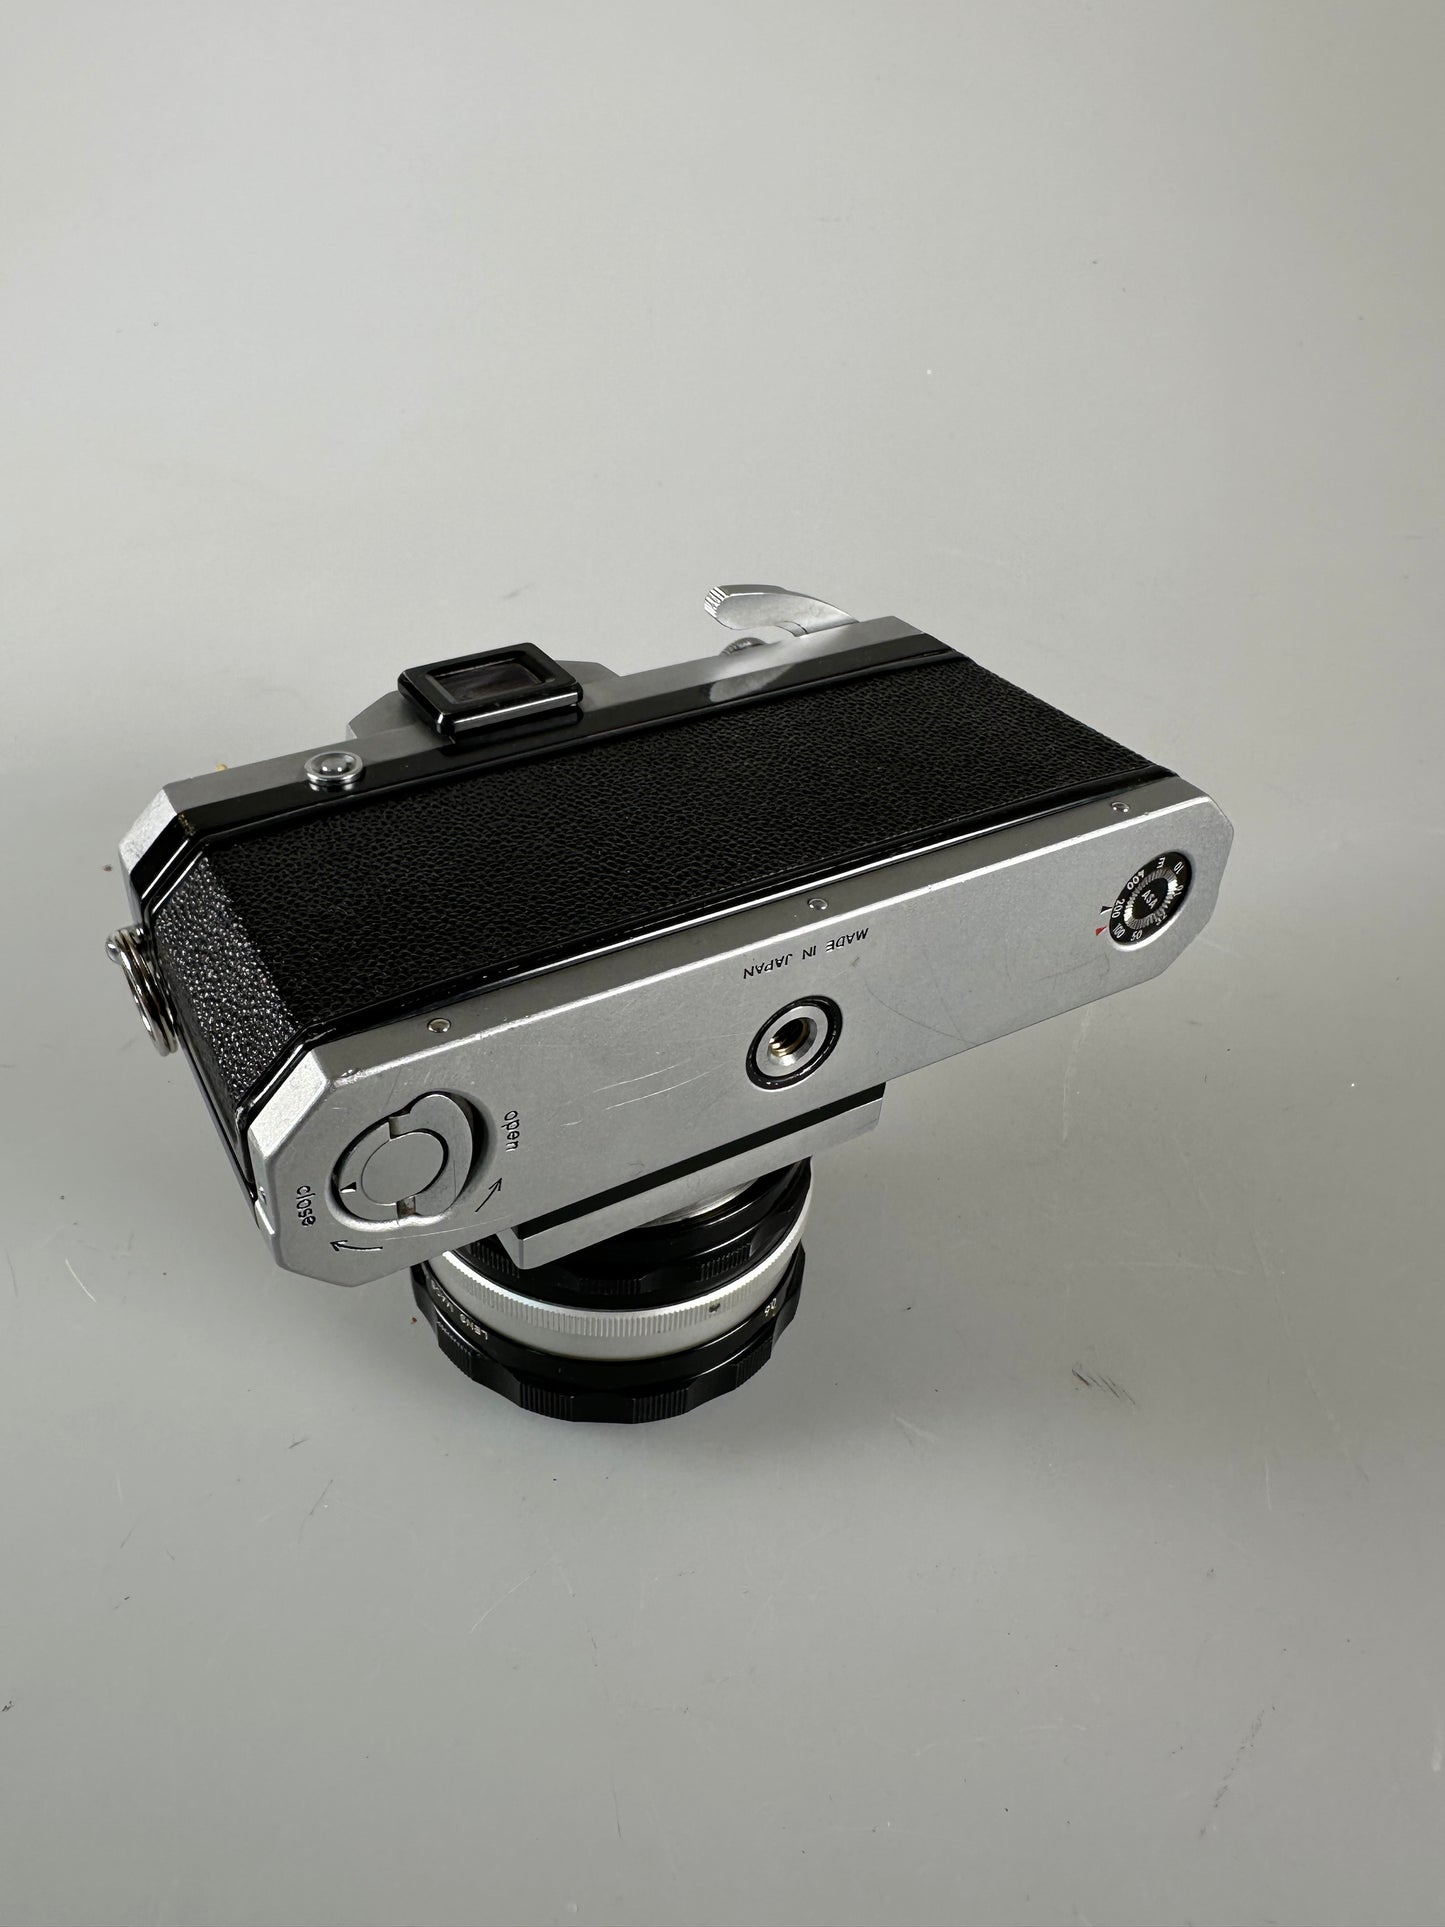 Nikon F w/ Plain Prism SLR Film Camera Body Chrome with 50mm f1.4 lens kit